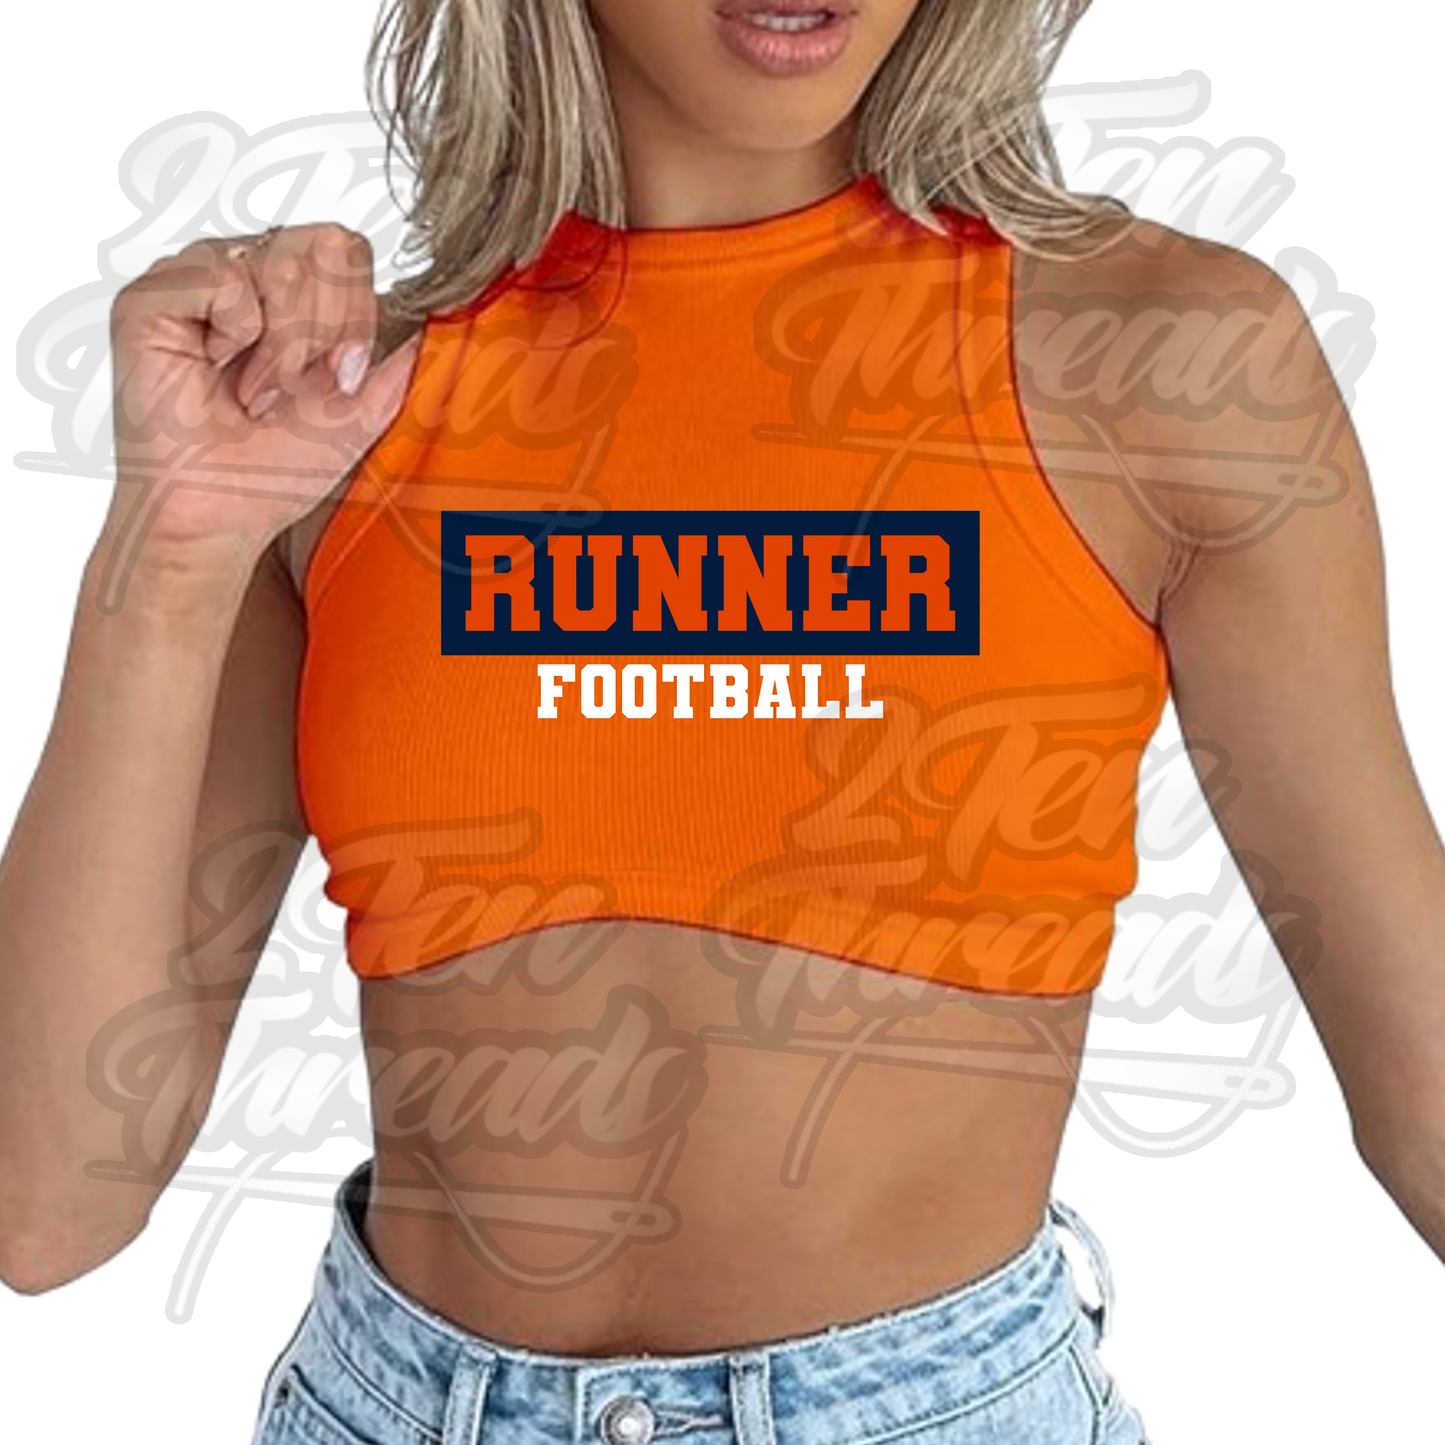 Runner Football Knitted Shirt